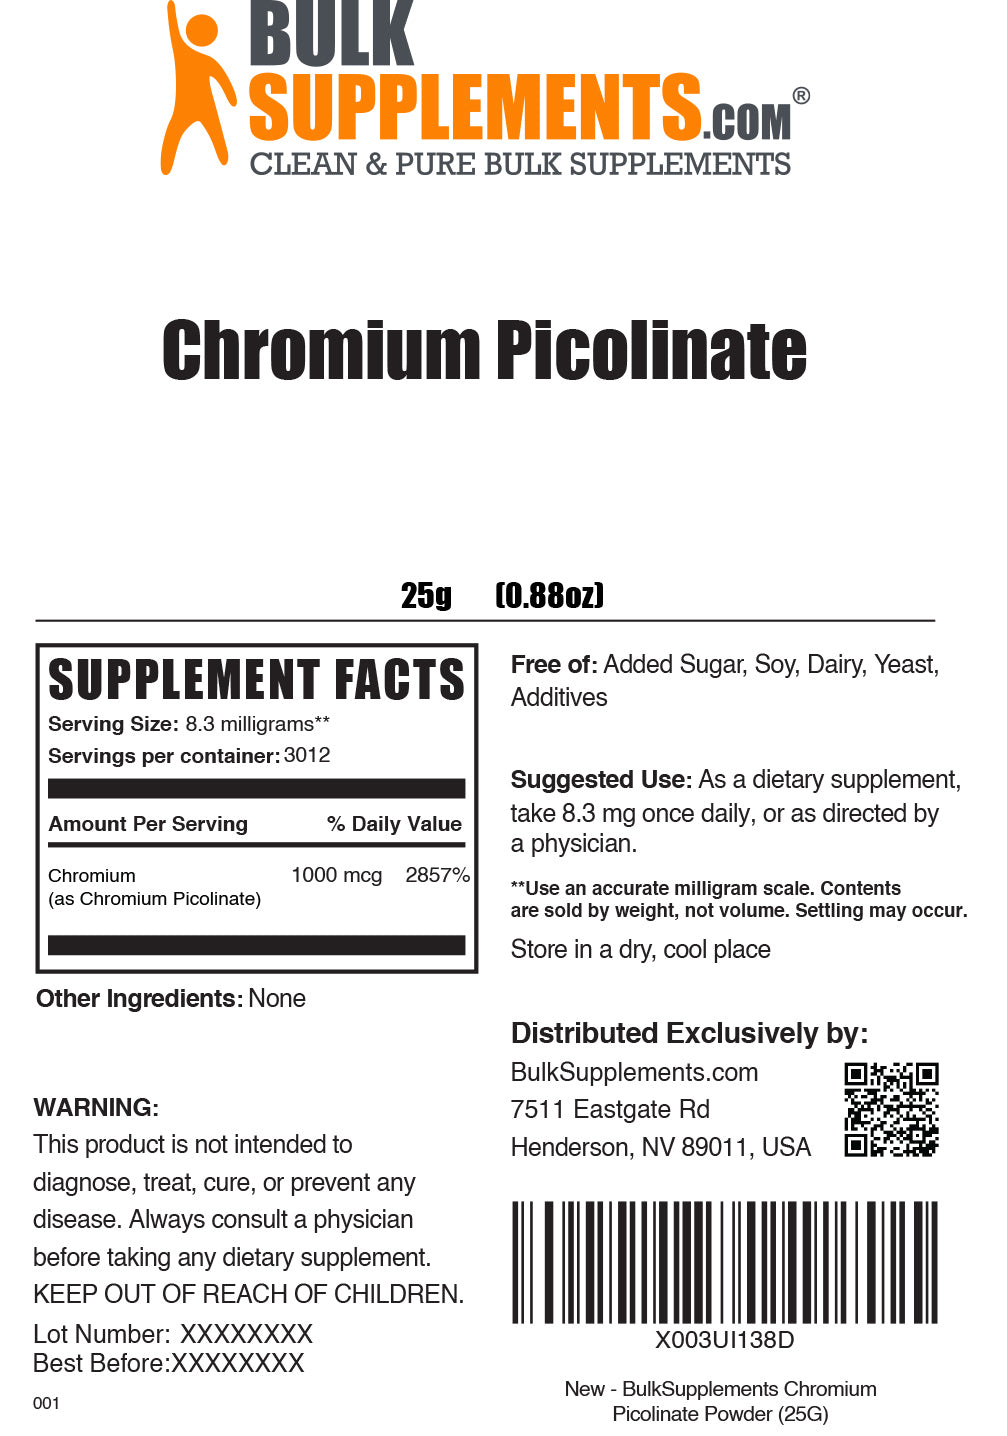 25g of Chromium Picolinate Supplement Facts